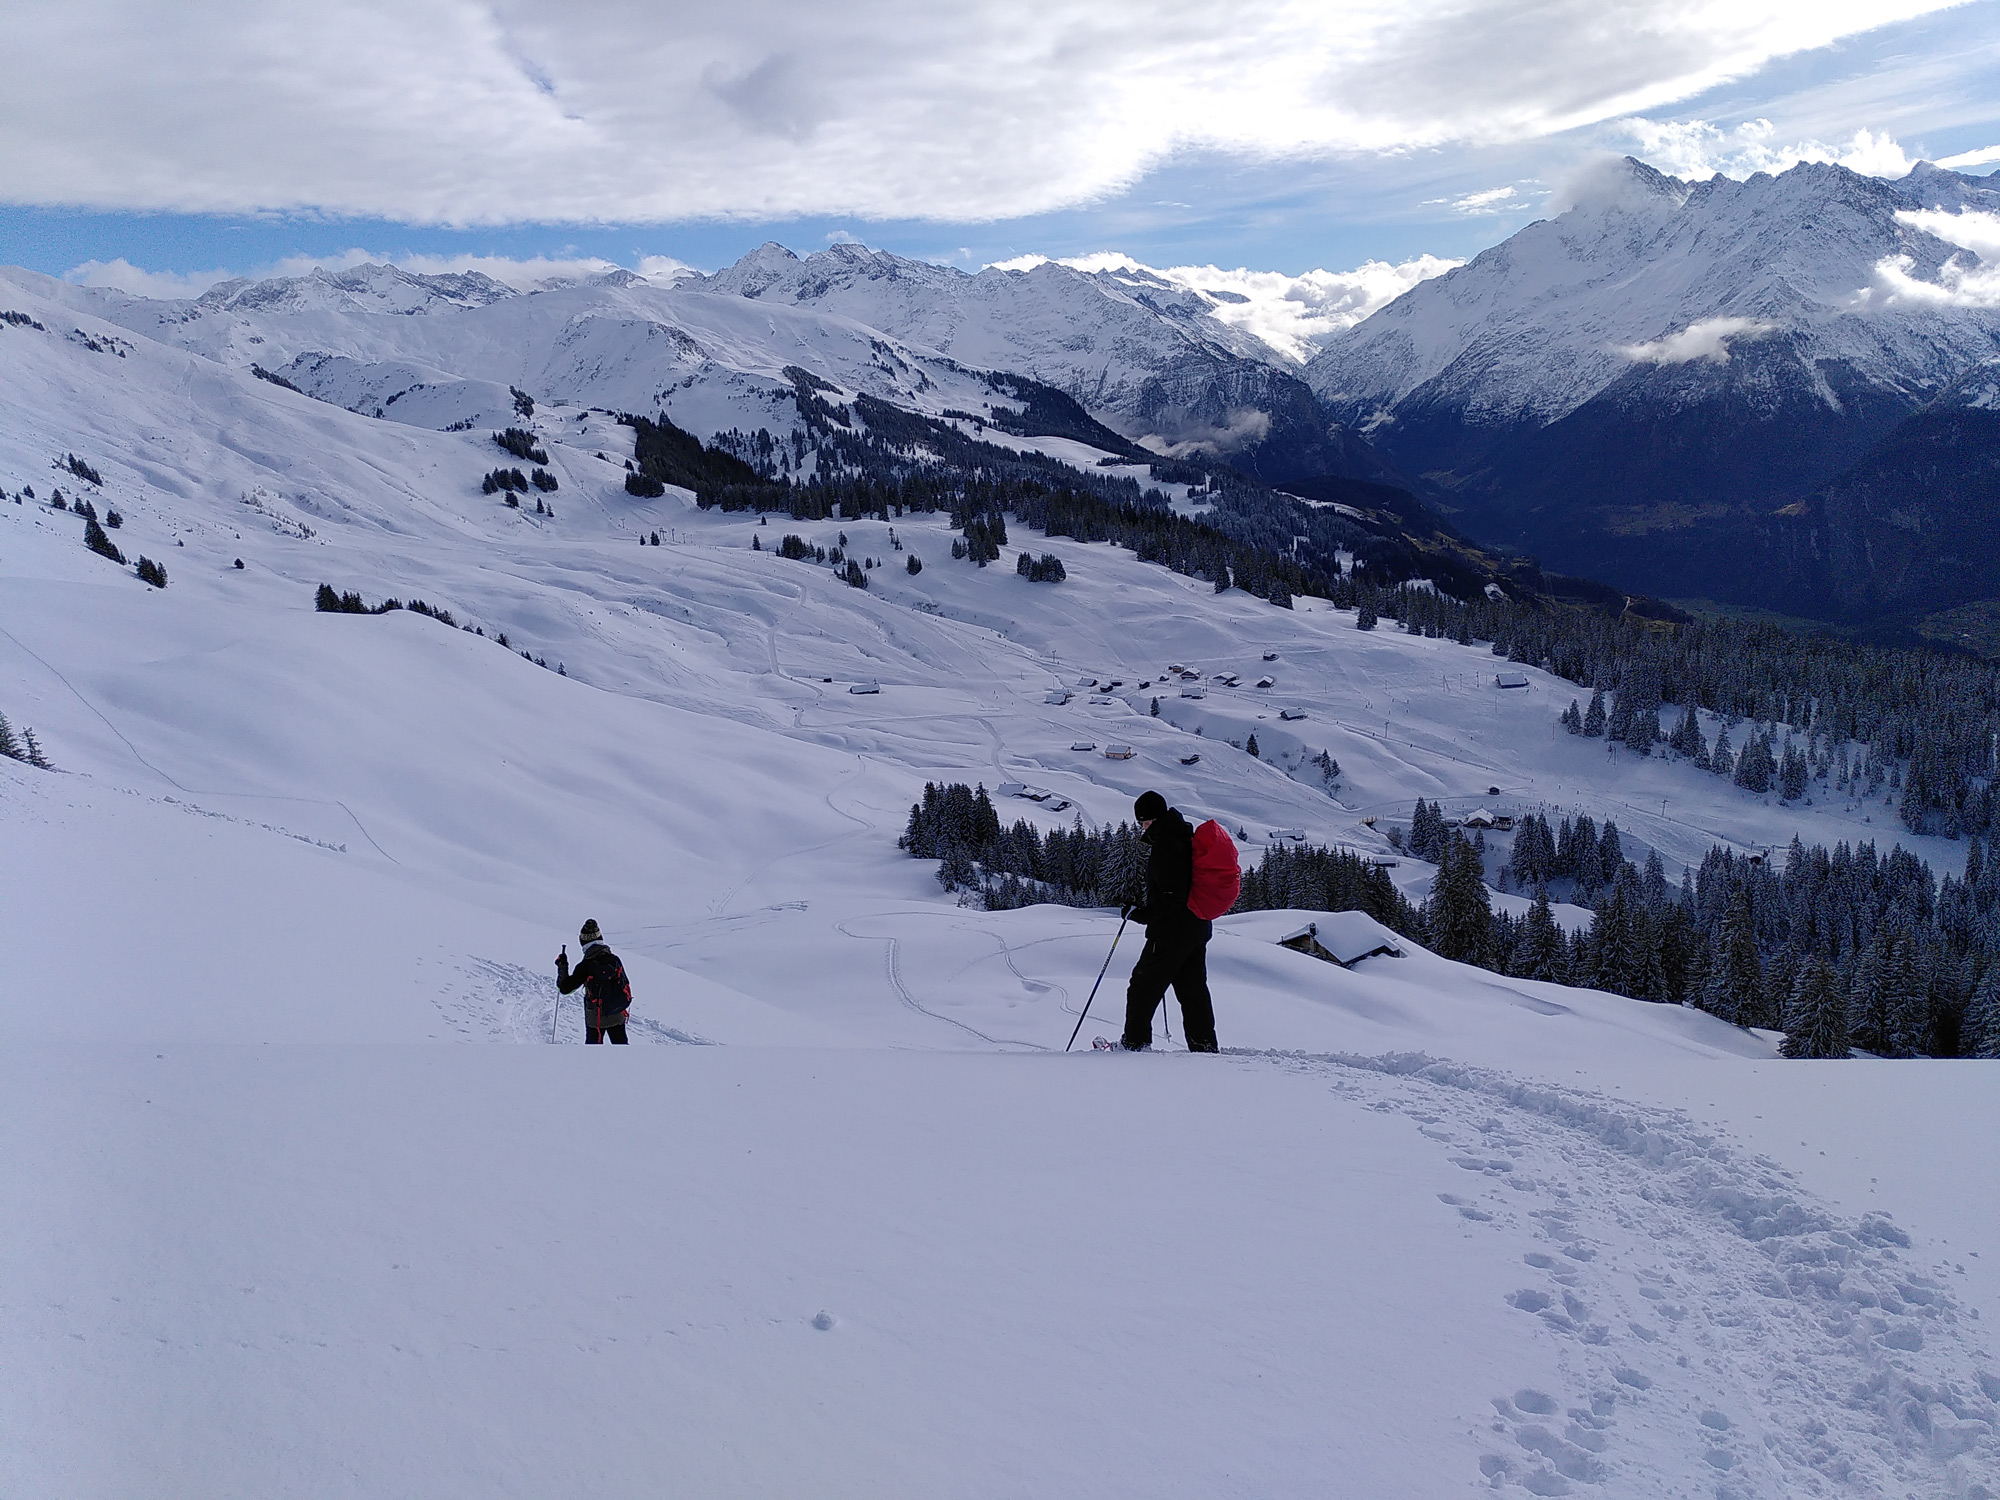 Auf dem Abstieg mit den Schneeschuhen vor wunderschönem Panorama mit schneebedeckten Bergen. 